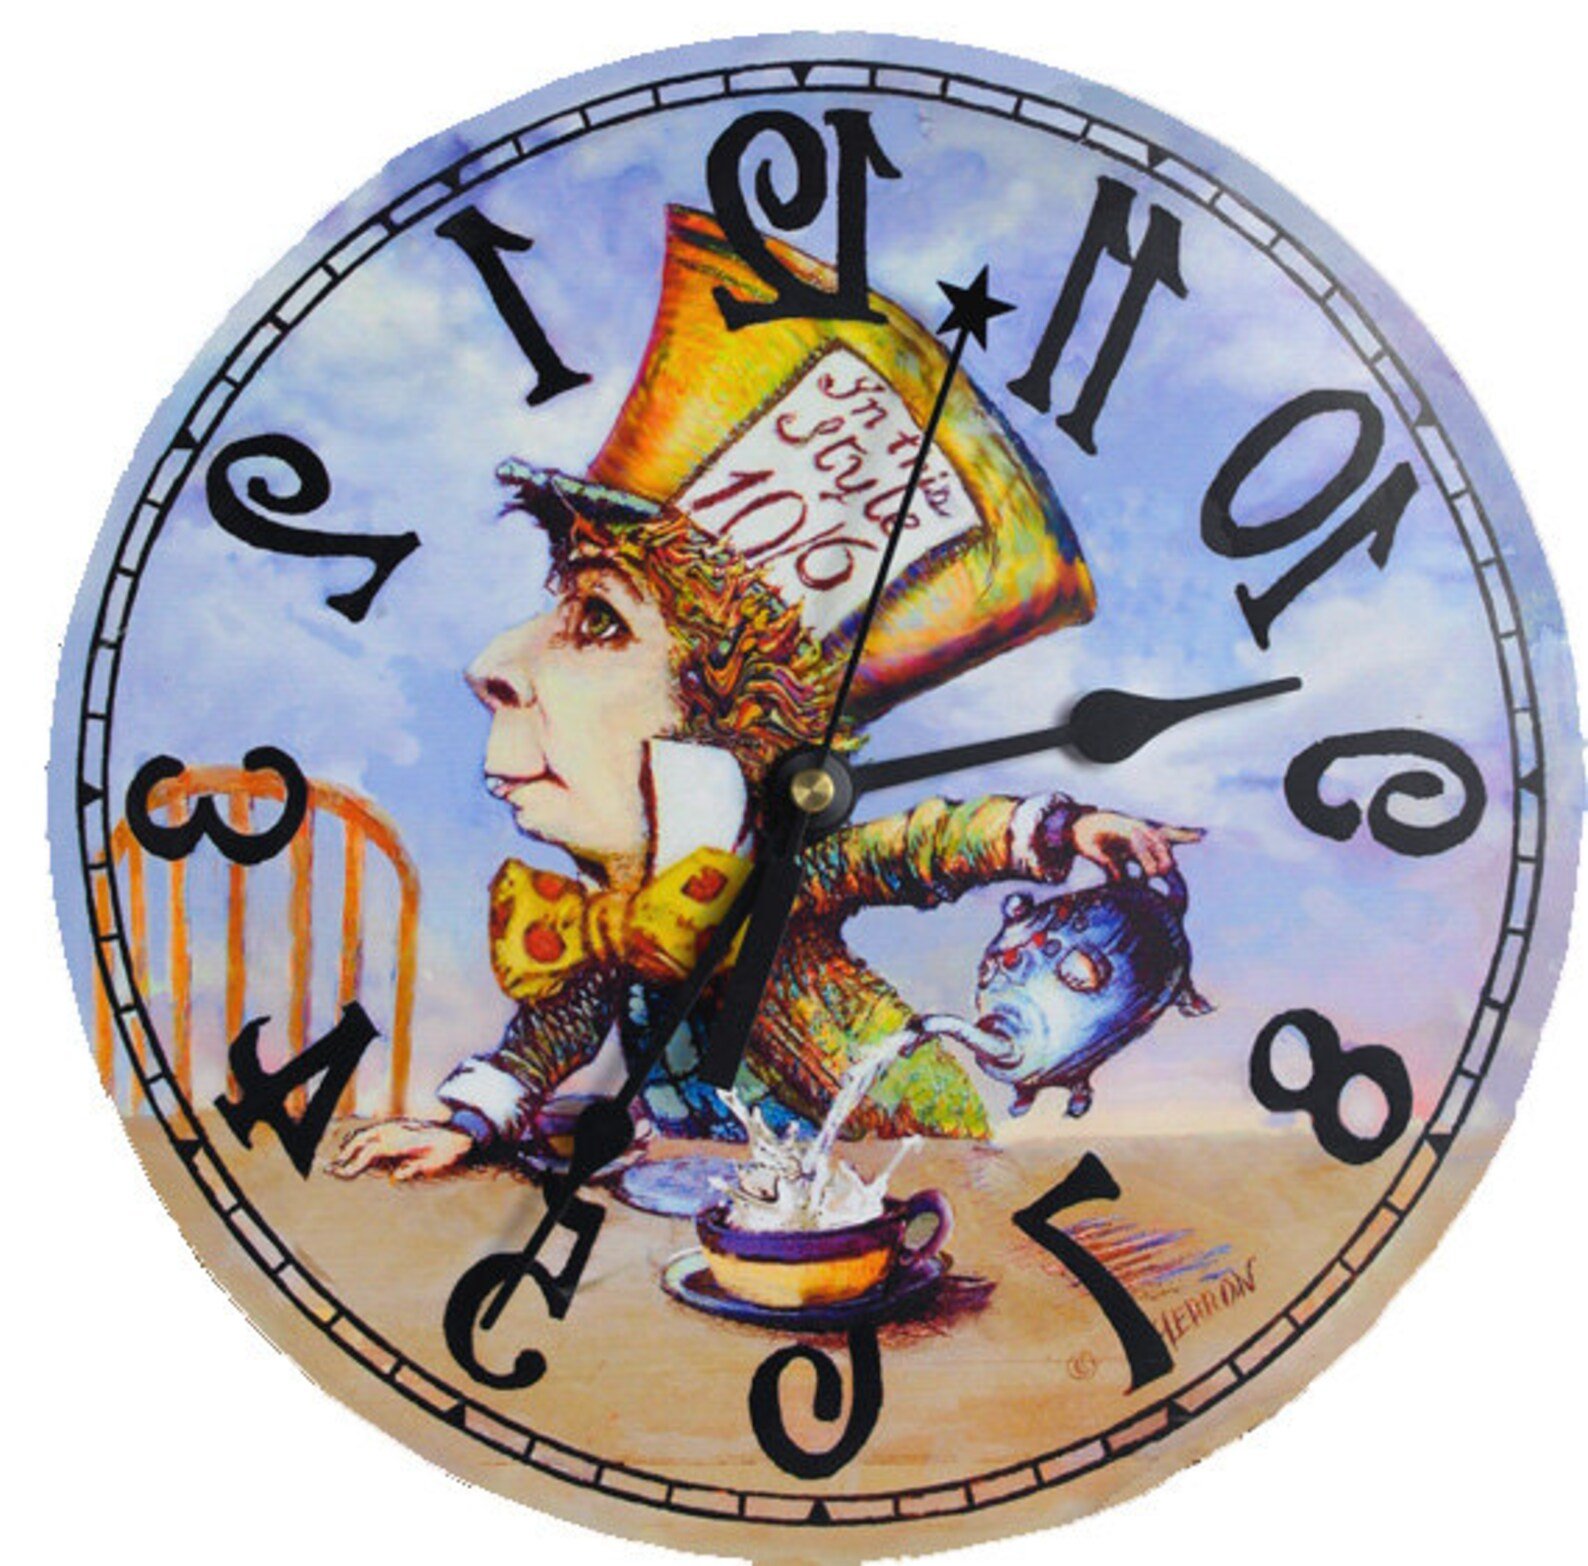 Купить алису без часов. Циферблат часов Алиса в стране чудес. Часы циферблат Алиса в стране чудес. Chasi Алиса в стране чудес. Часы Alisa in Wonderland.